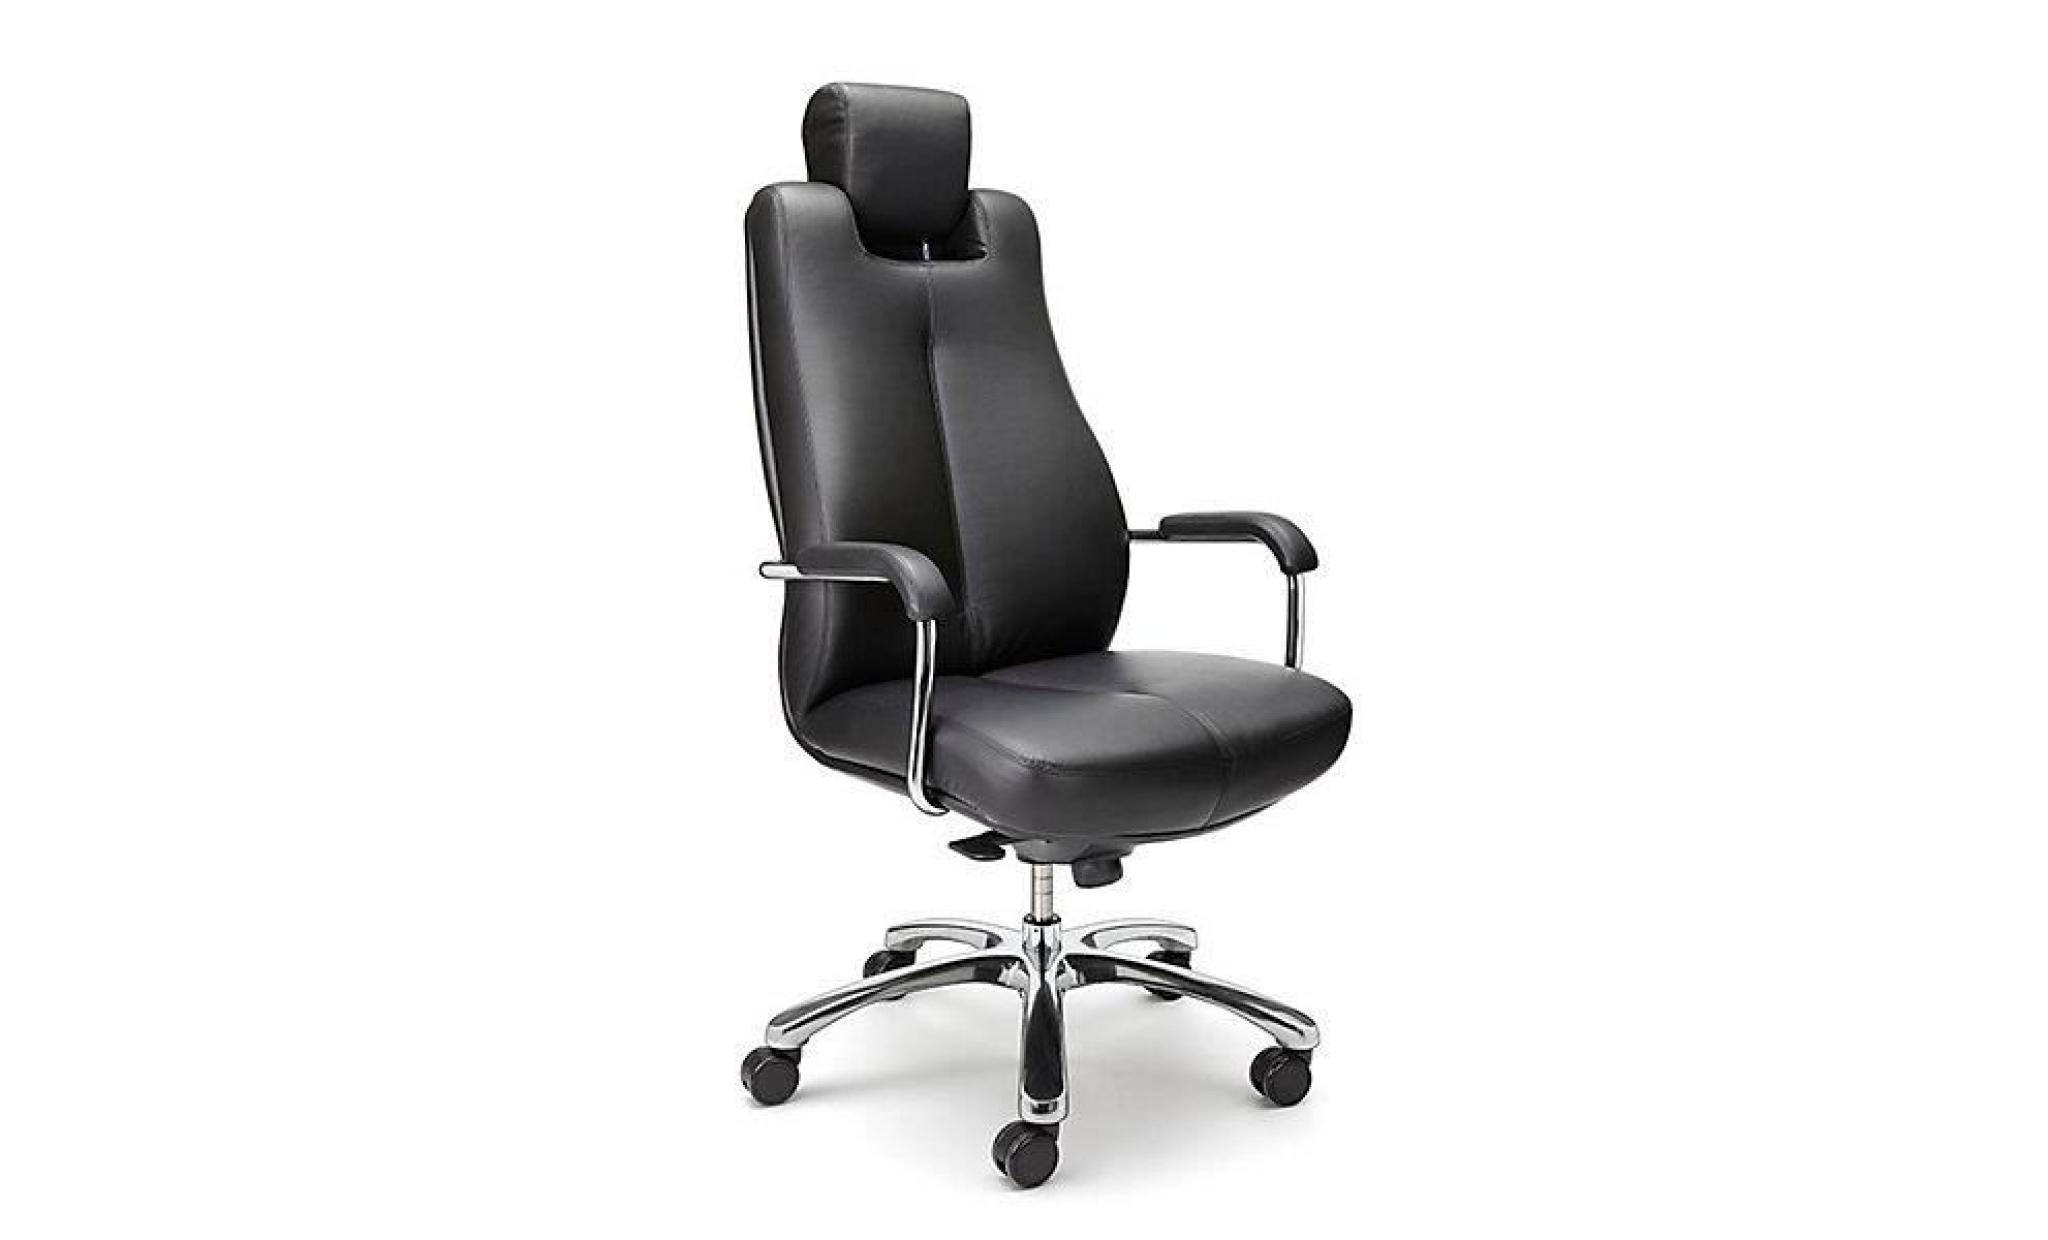 siège de bureau pivotant   fauteuil de bureau, cuir souple   noir, appuie tête réglable   chaise chaise de bureau chaises chaises de